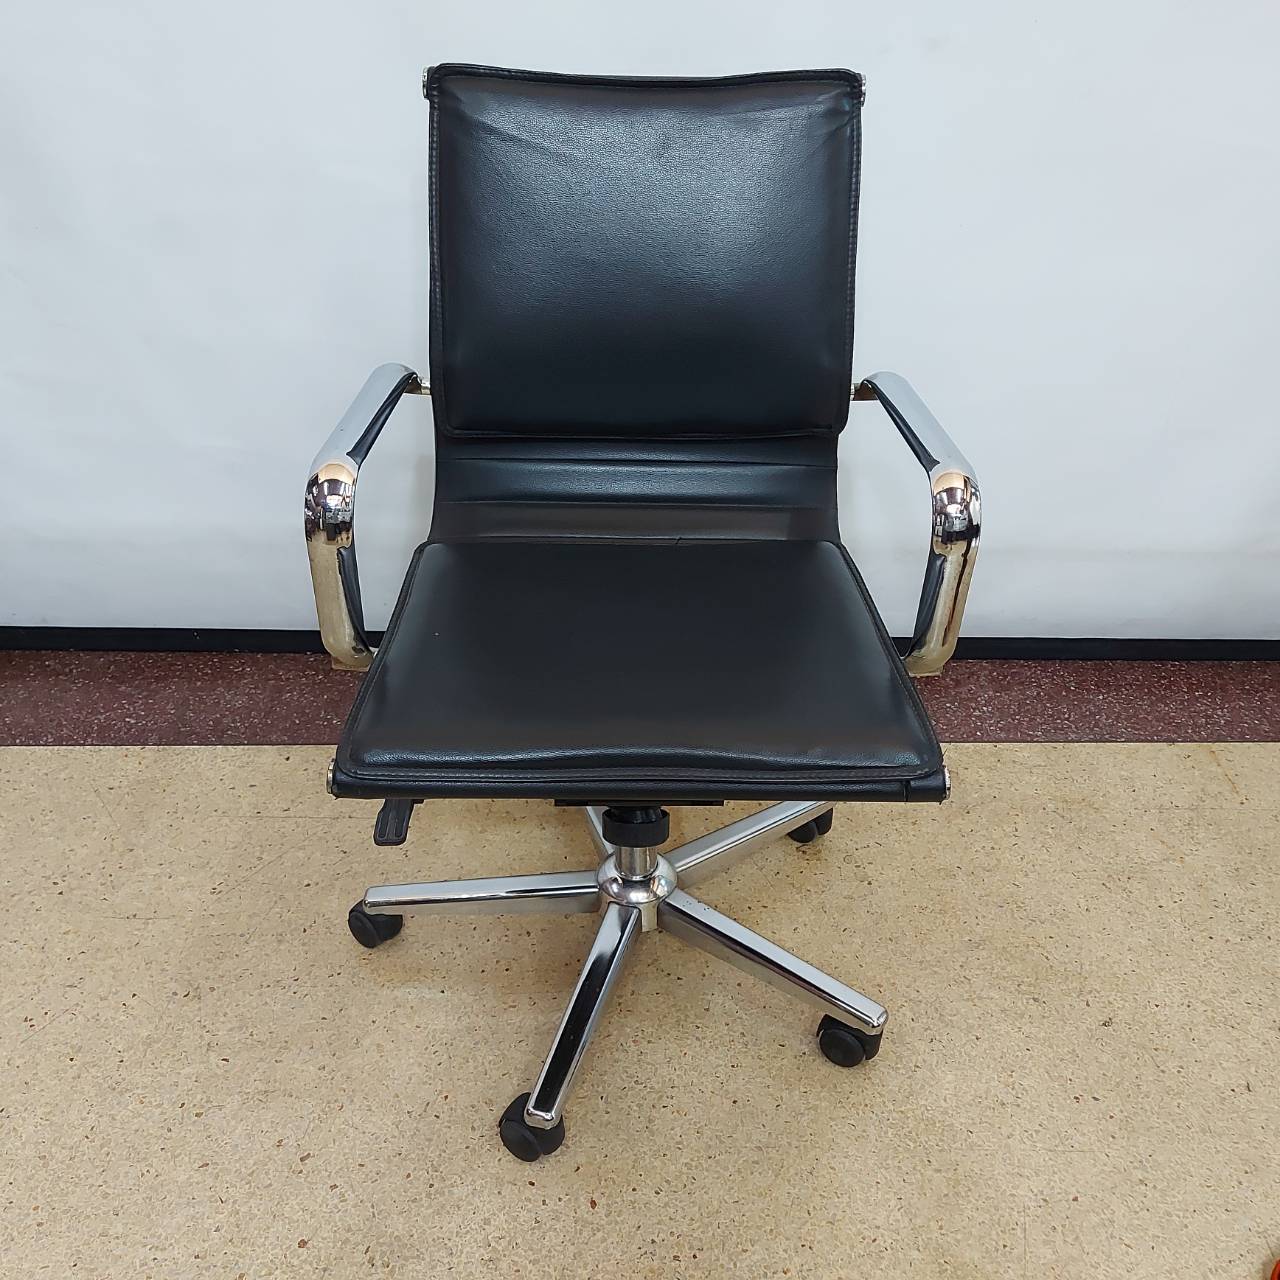 เก้าอี้สำนักงาน    เก้าอี้เซลล์หนังสีดำมีแขน   ระบบไฮโดริกขาเหล็กชุป